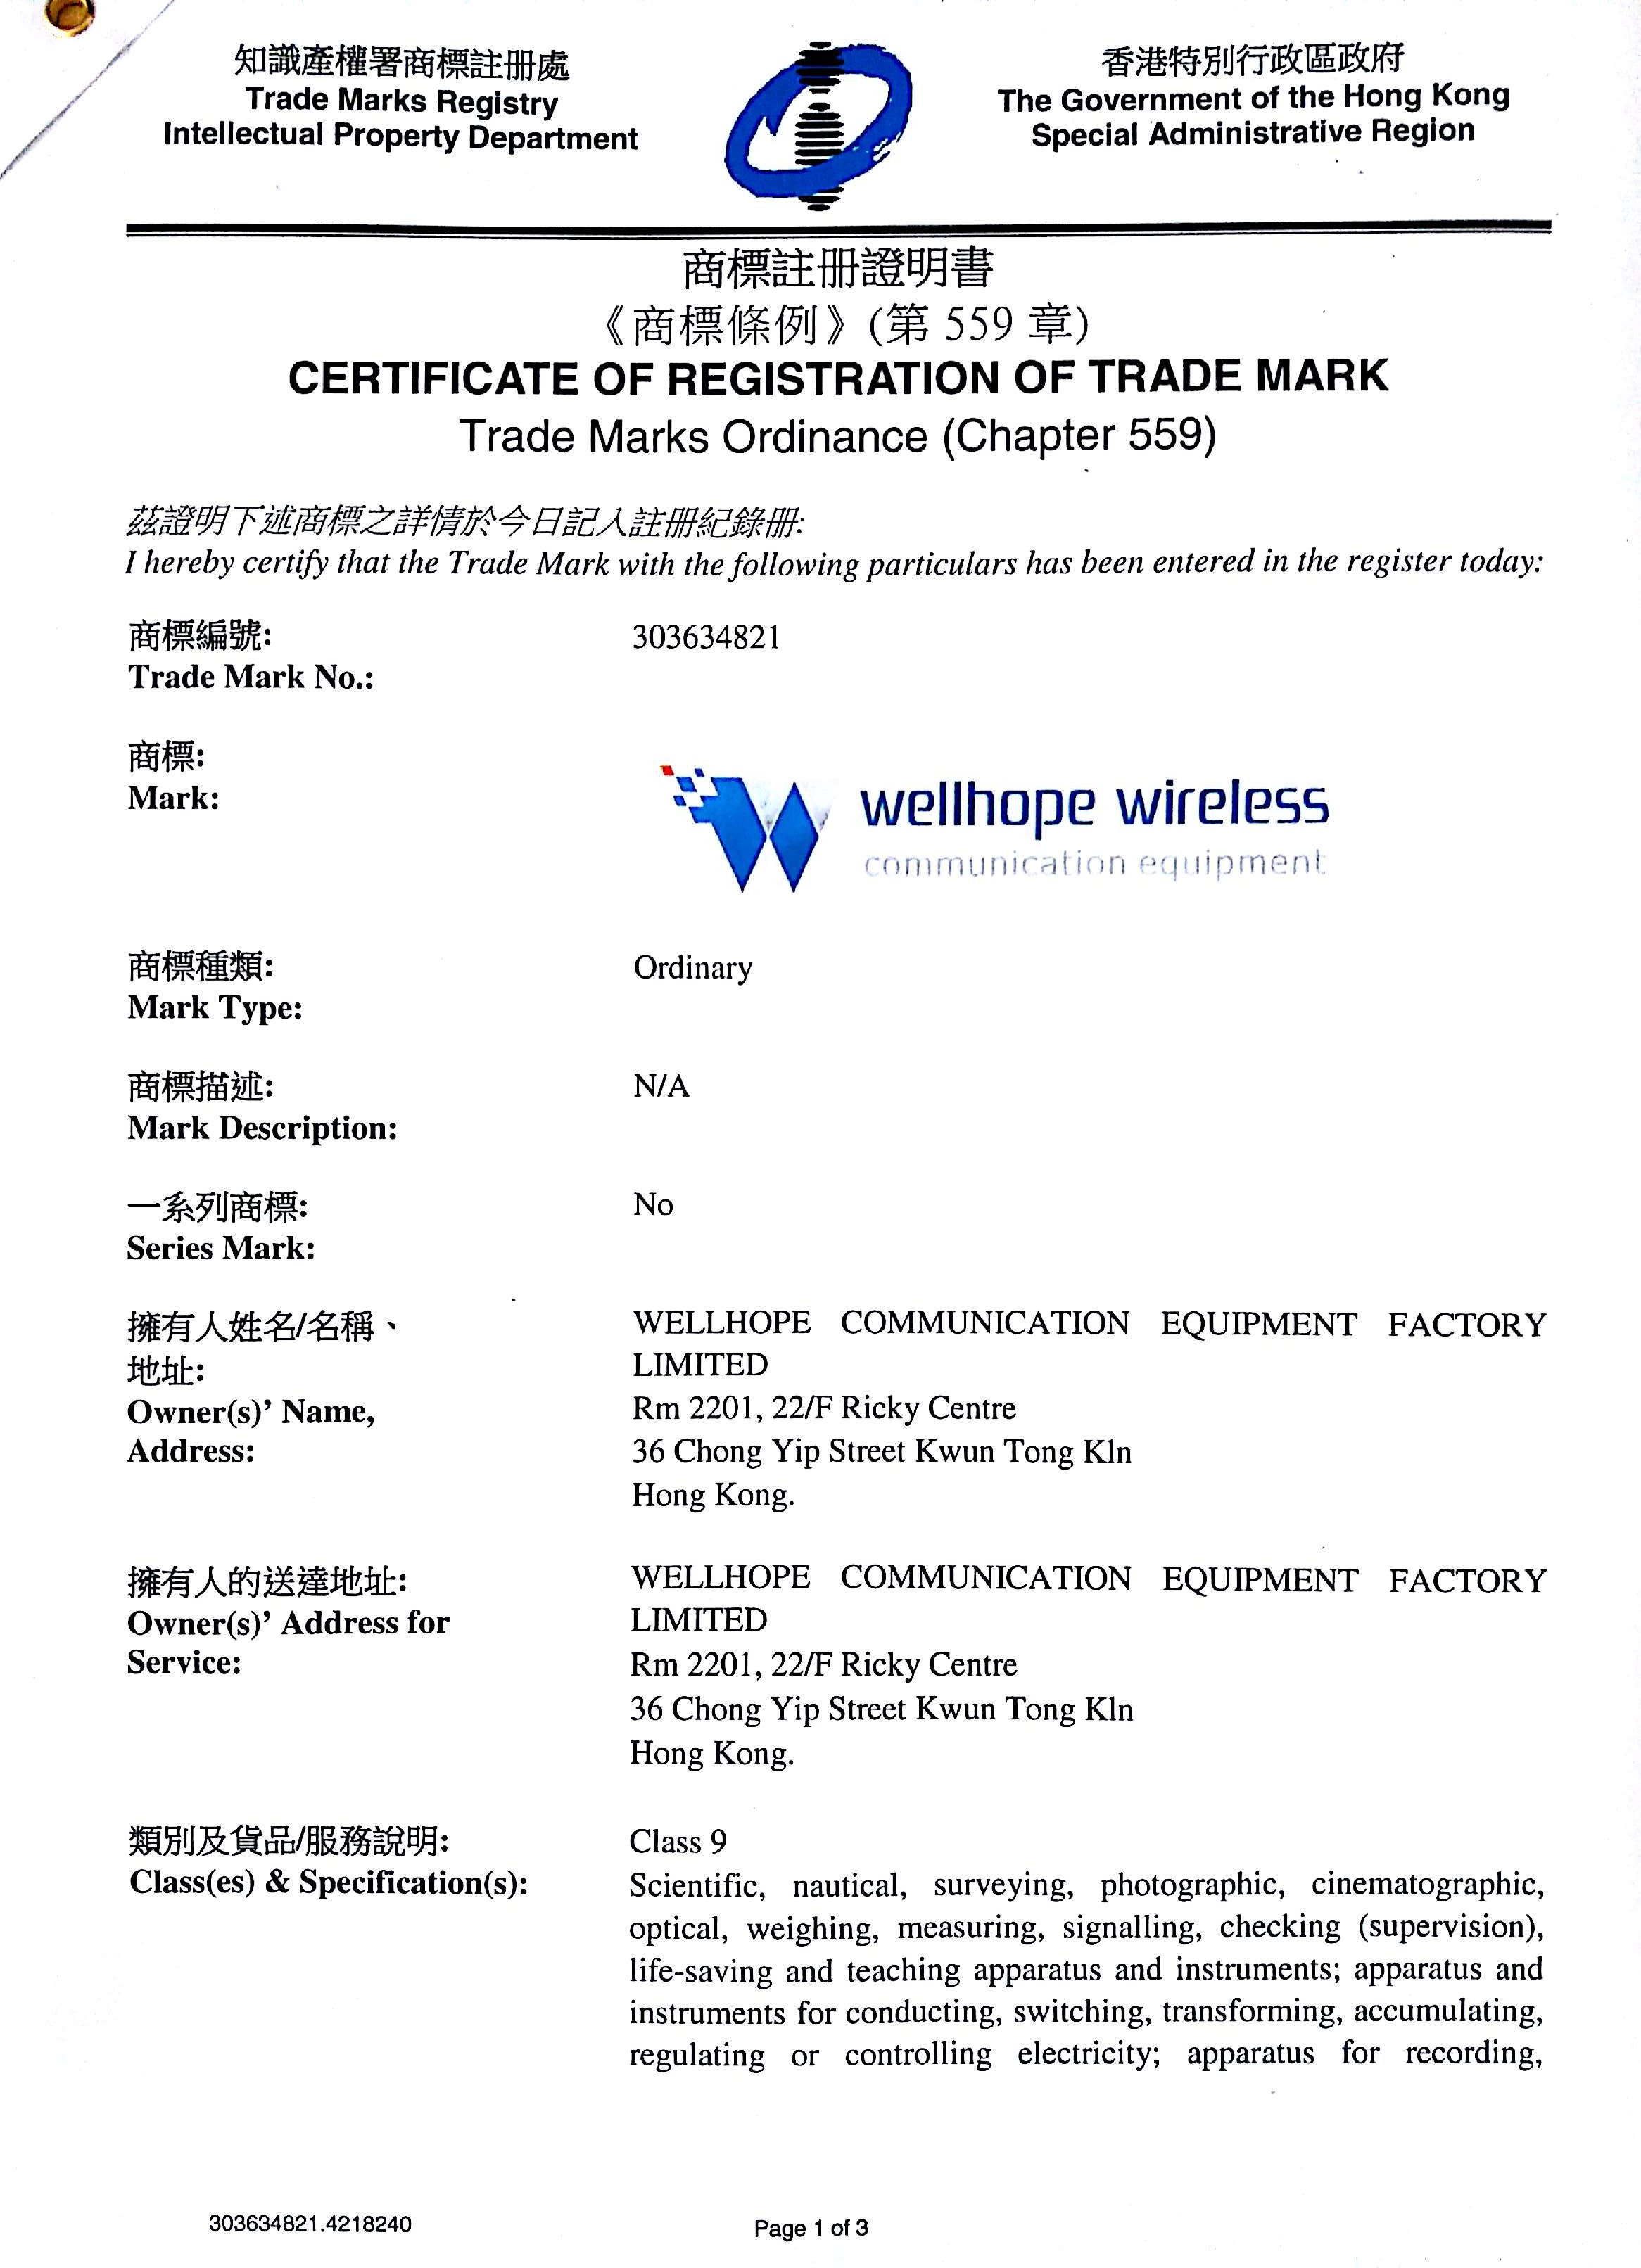 Wellhope Wireless-Marke registriert haben